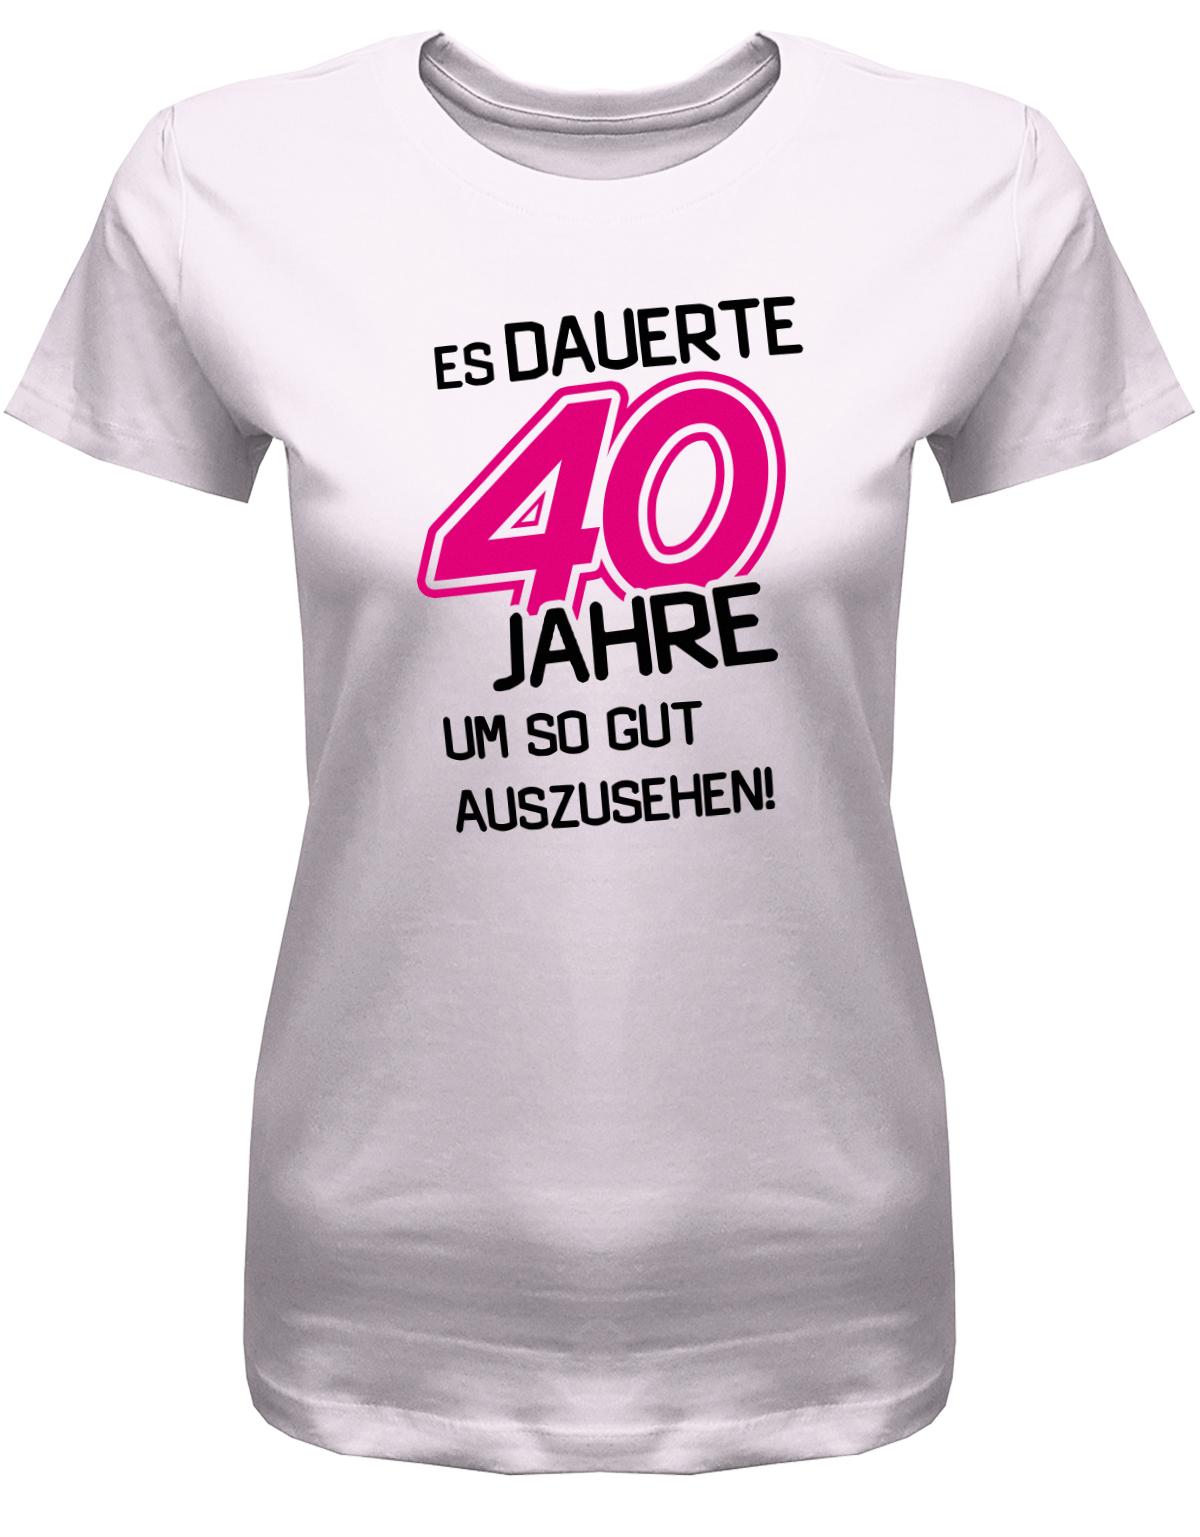 Lustiges T-Shirt zum 40 Geburtstag für die Frau Bedruckt mit Es dauerte 40 Jahre, um so gut auszusehen! Rosa